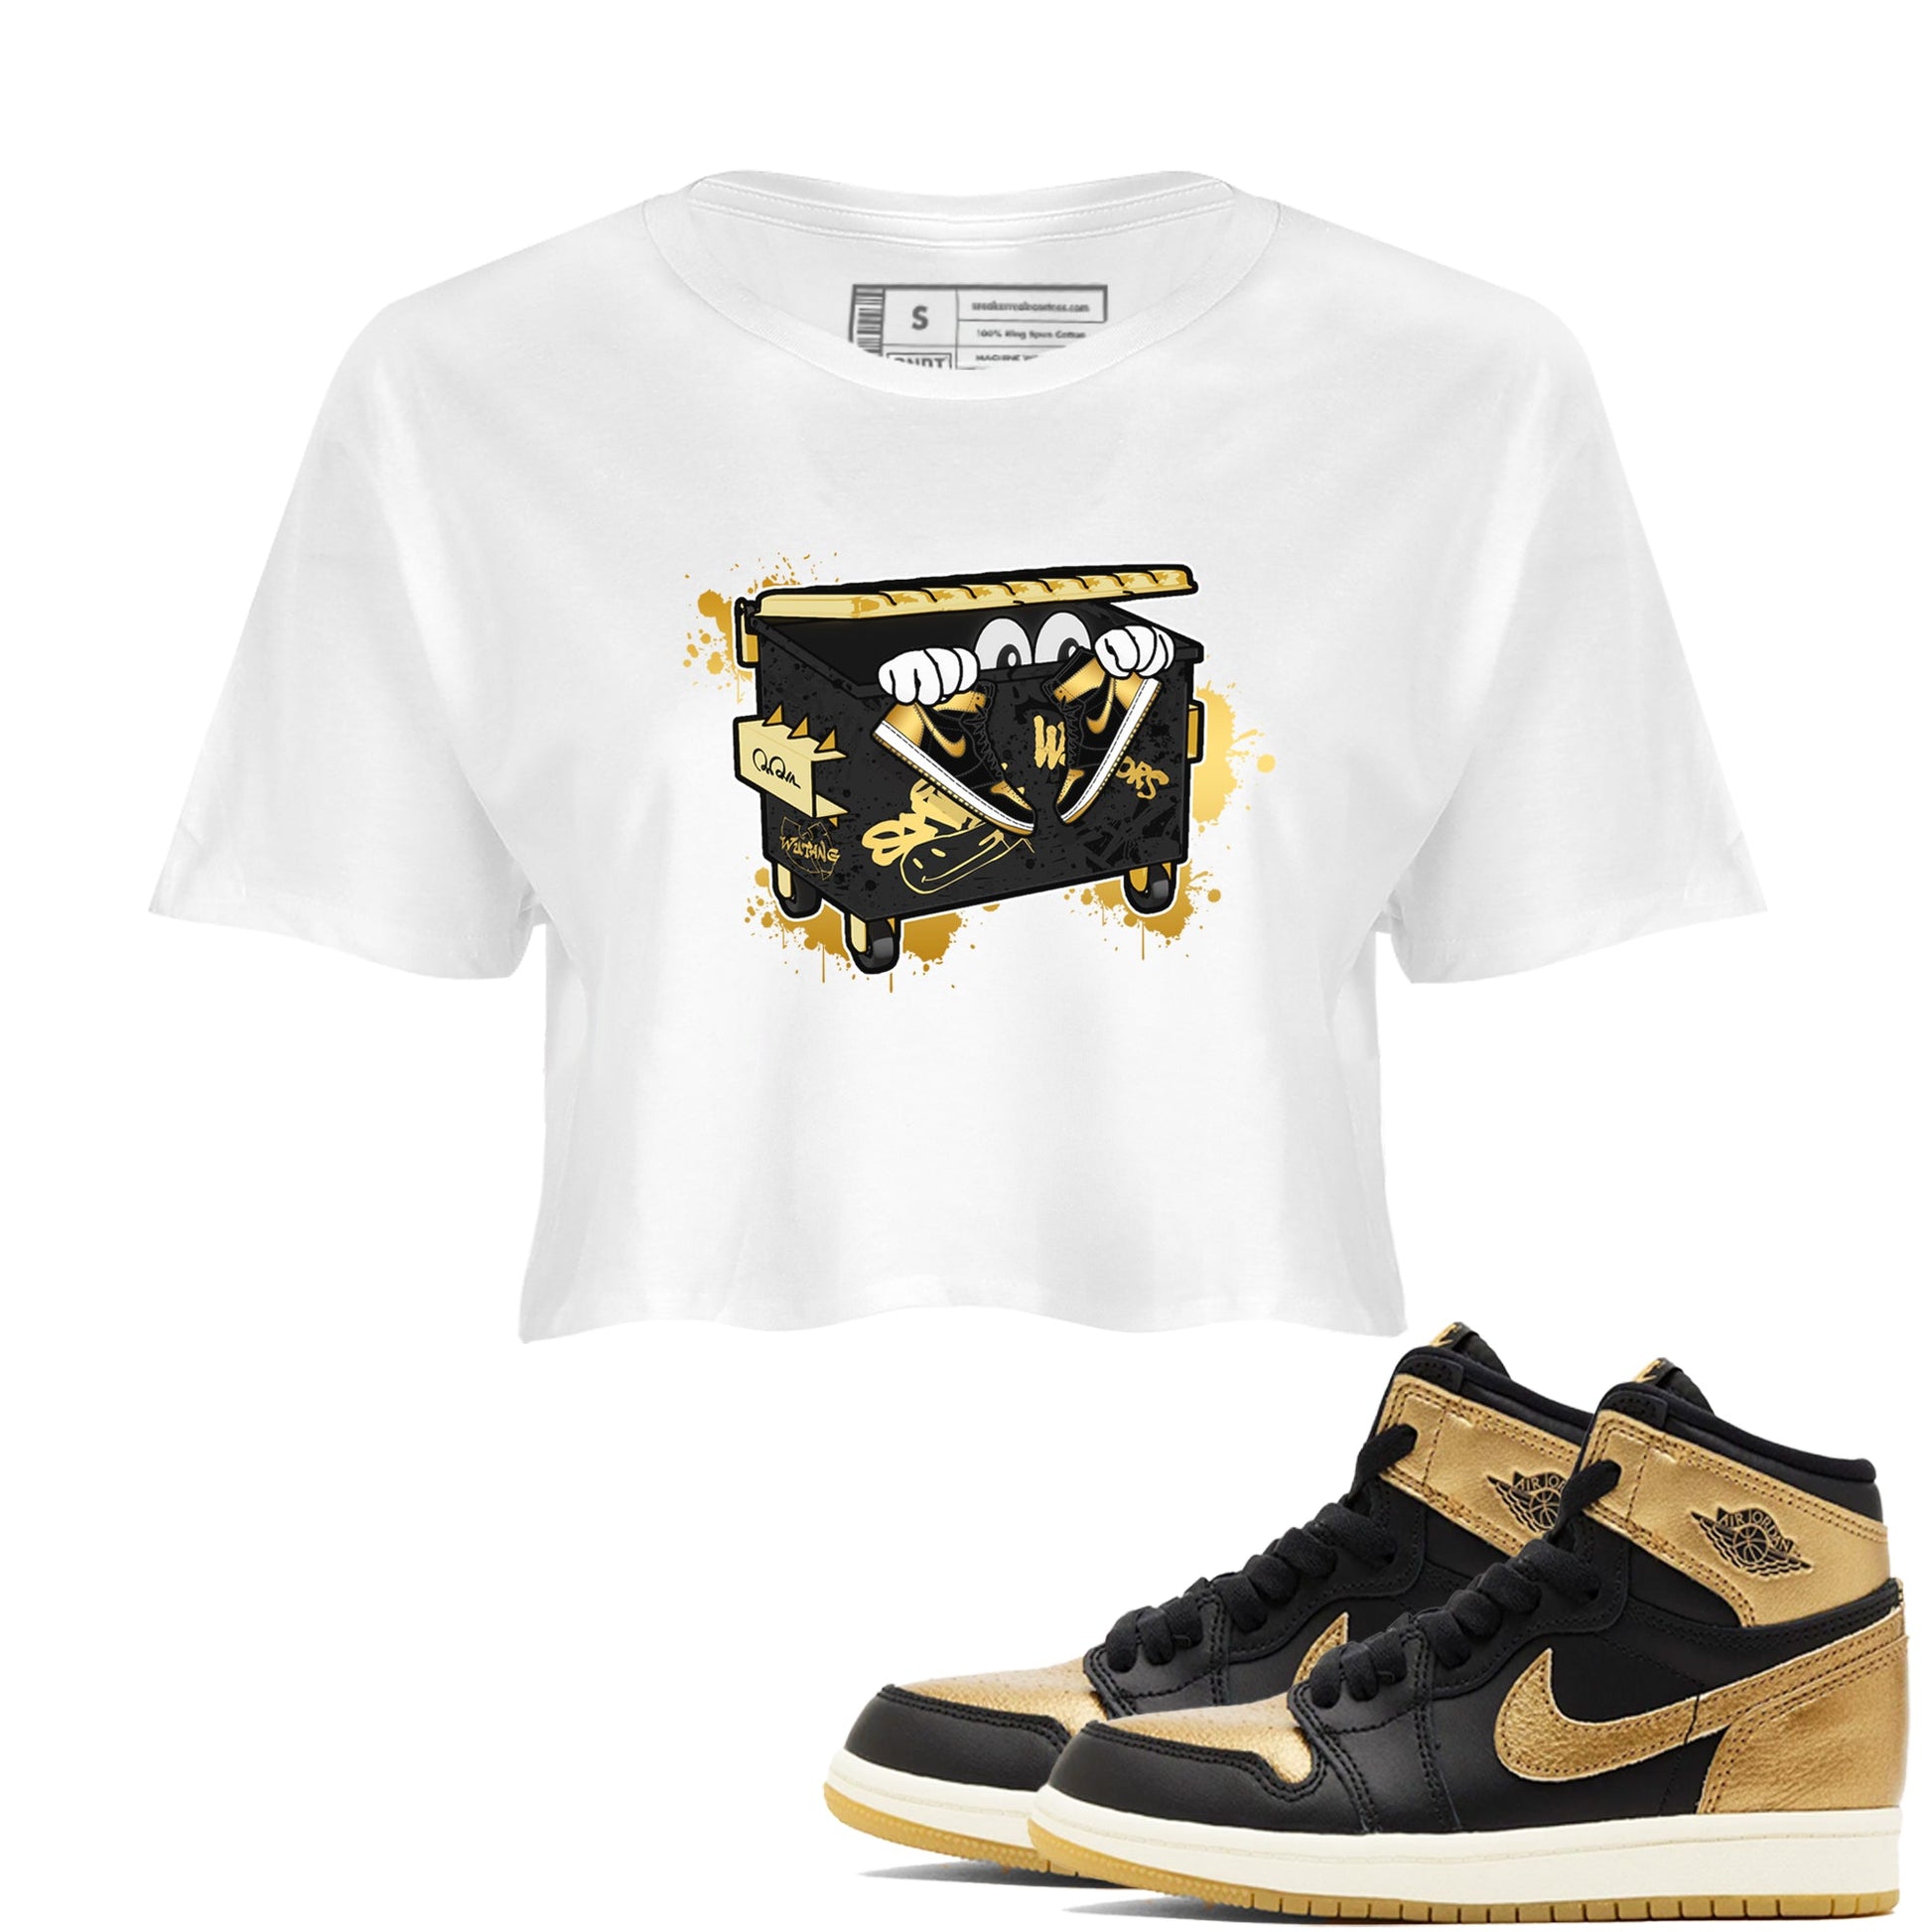 1s Black Metallic Gold shirts to match jordans Kick Trash sneaker match tees Air Jordan 1 Black Metallic Gold SNRT Sneaker Tees streetwear brand White 1 crop tee